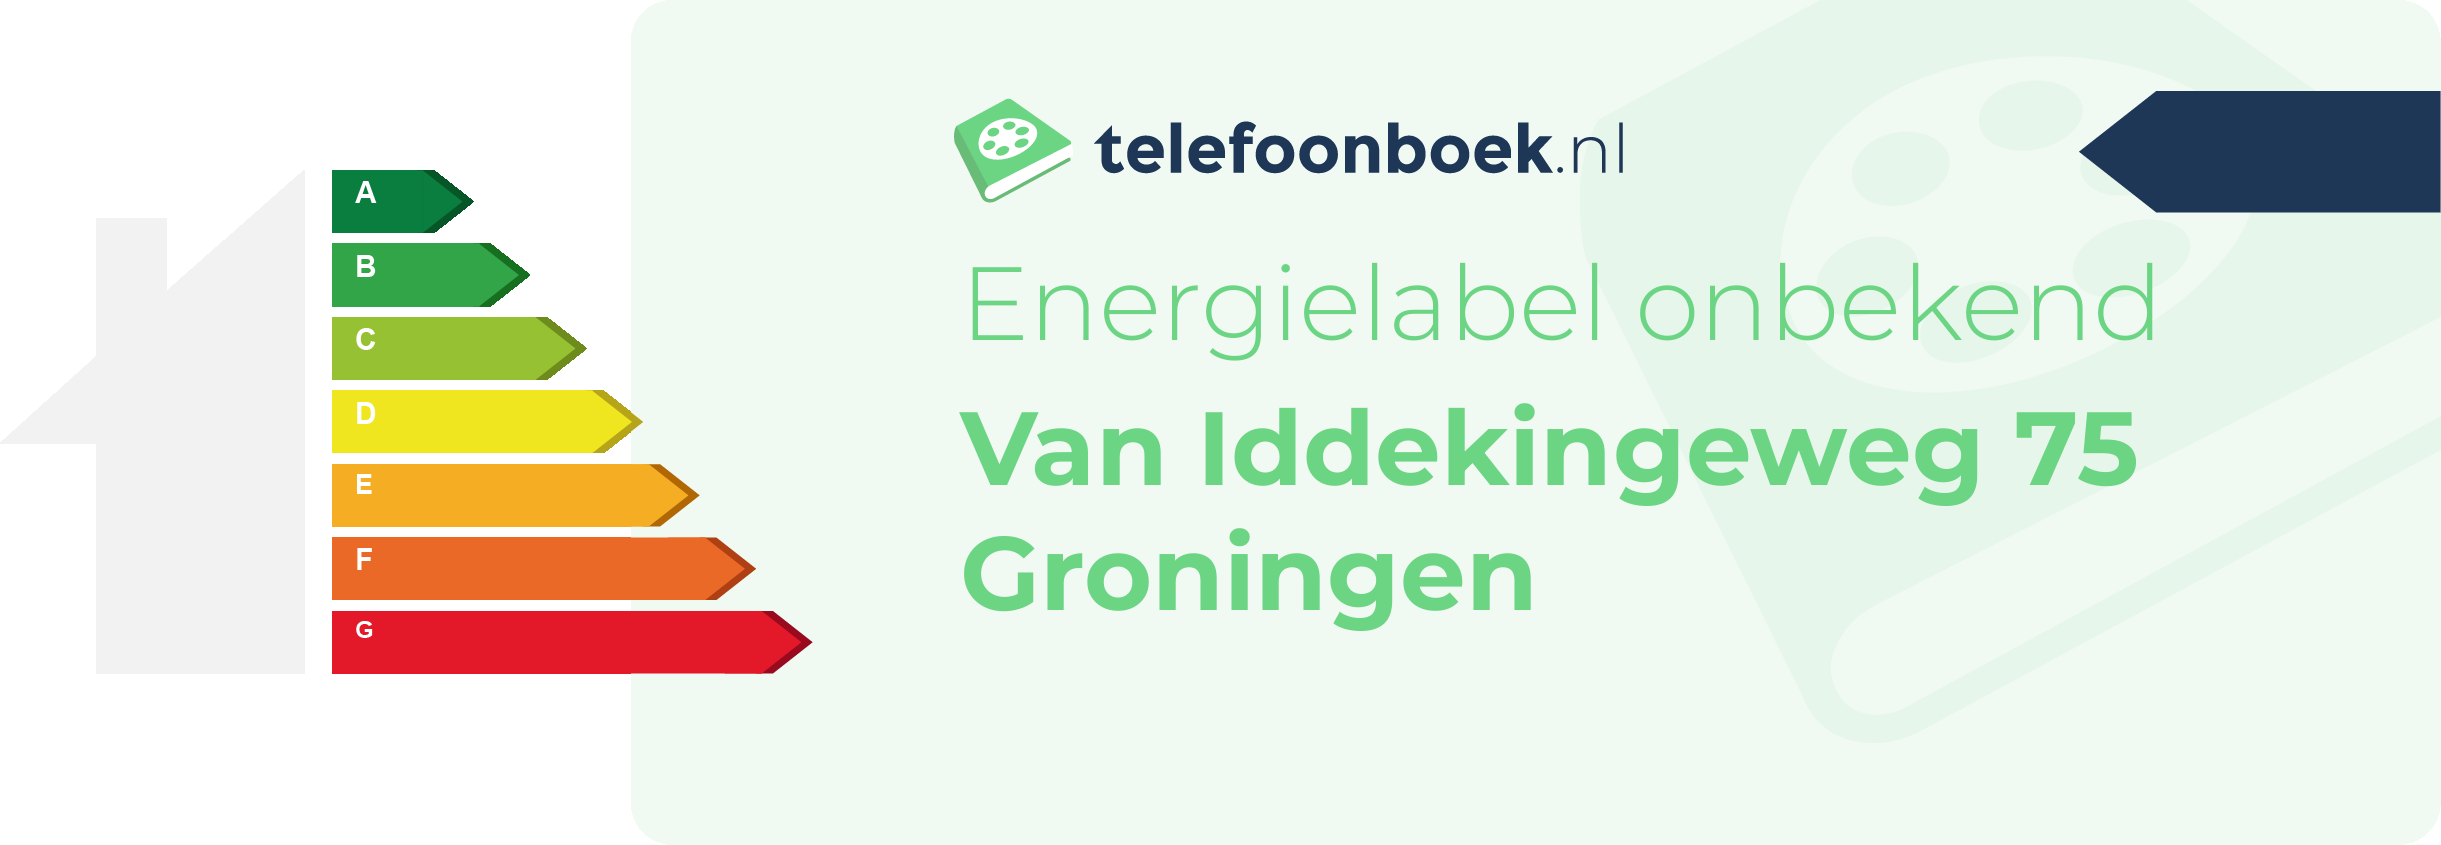 Energielabel Van Iddekingeweg 75 Groningen